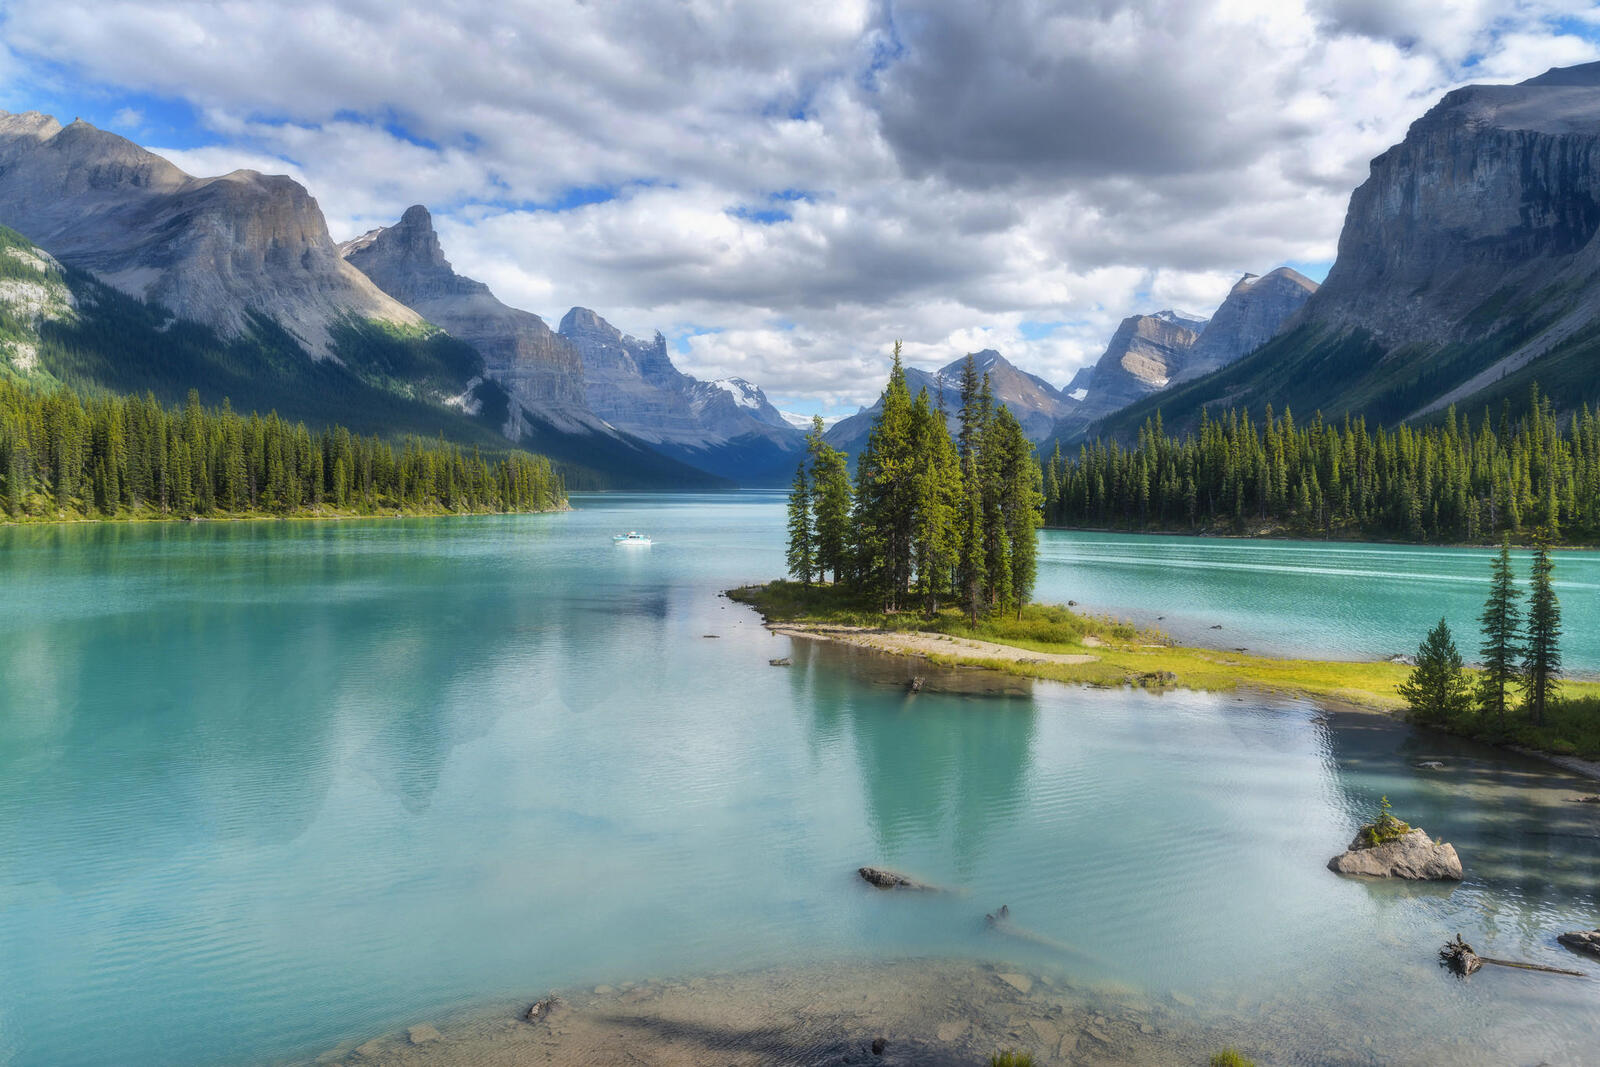 Бесплатное фото Фото озеро малиньша, канада без регистрации